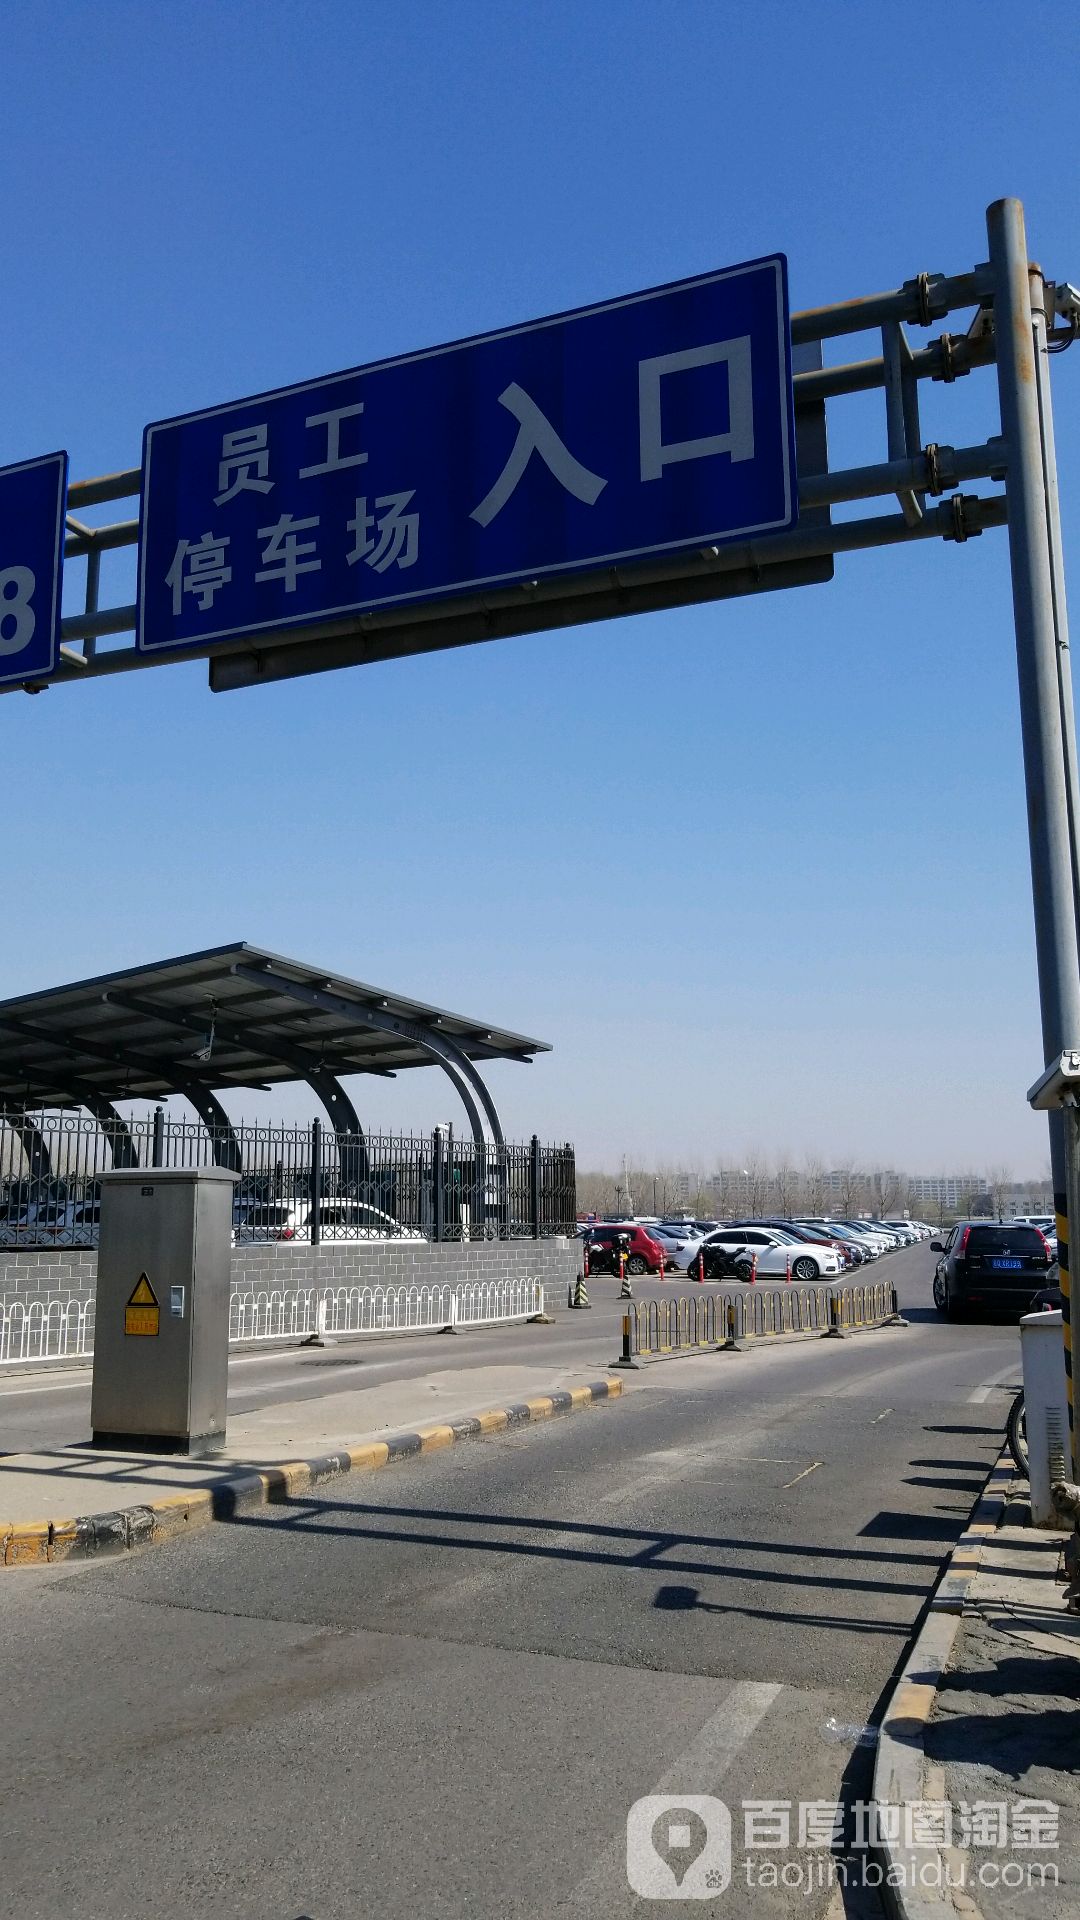 北京首都国际机场-近端停车场